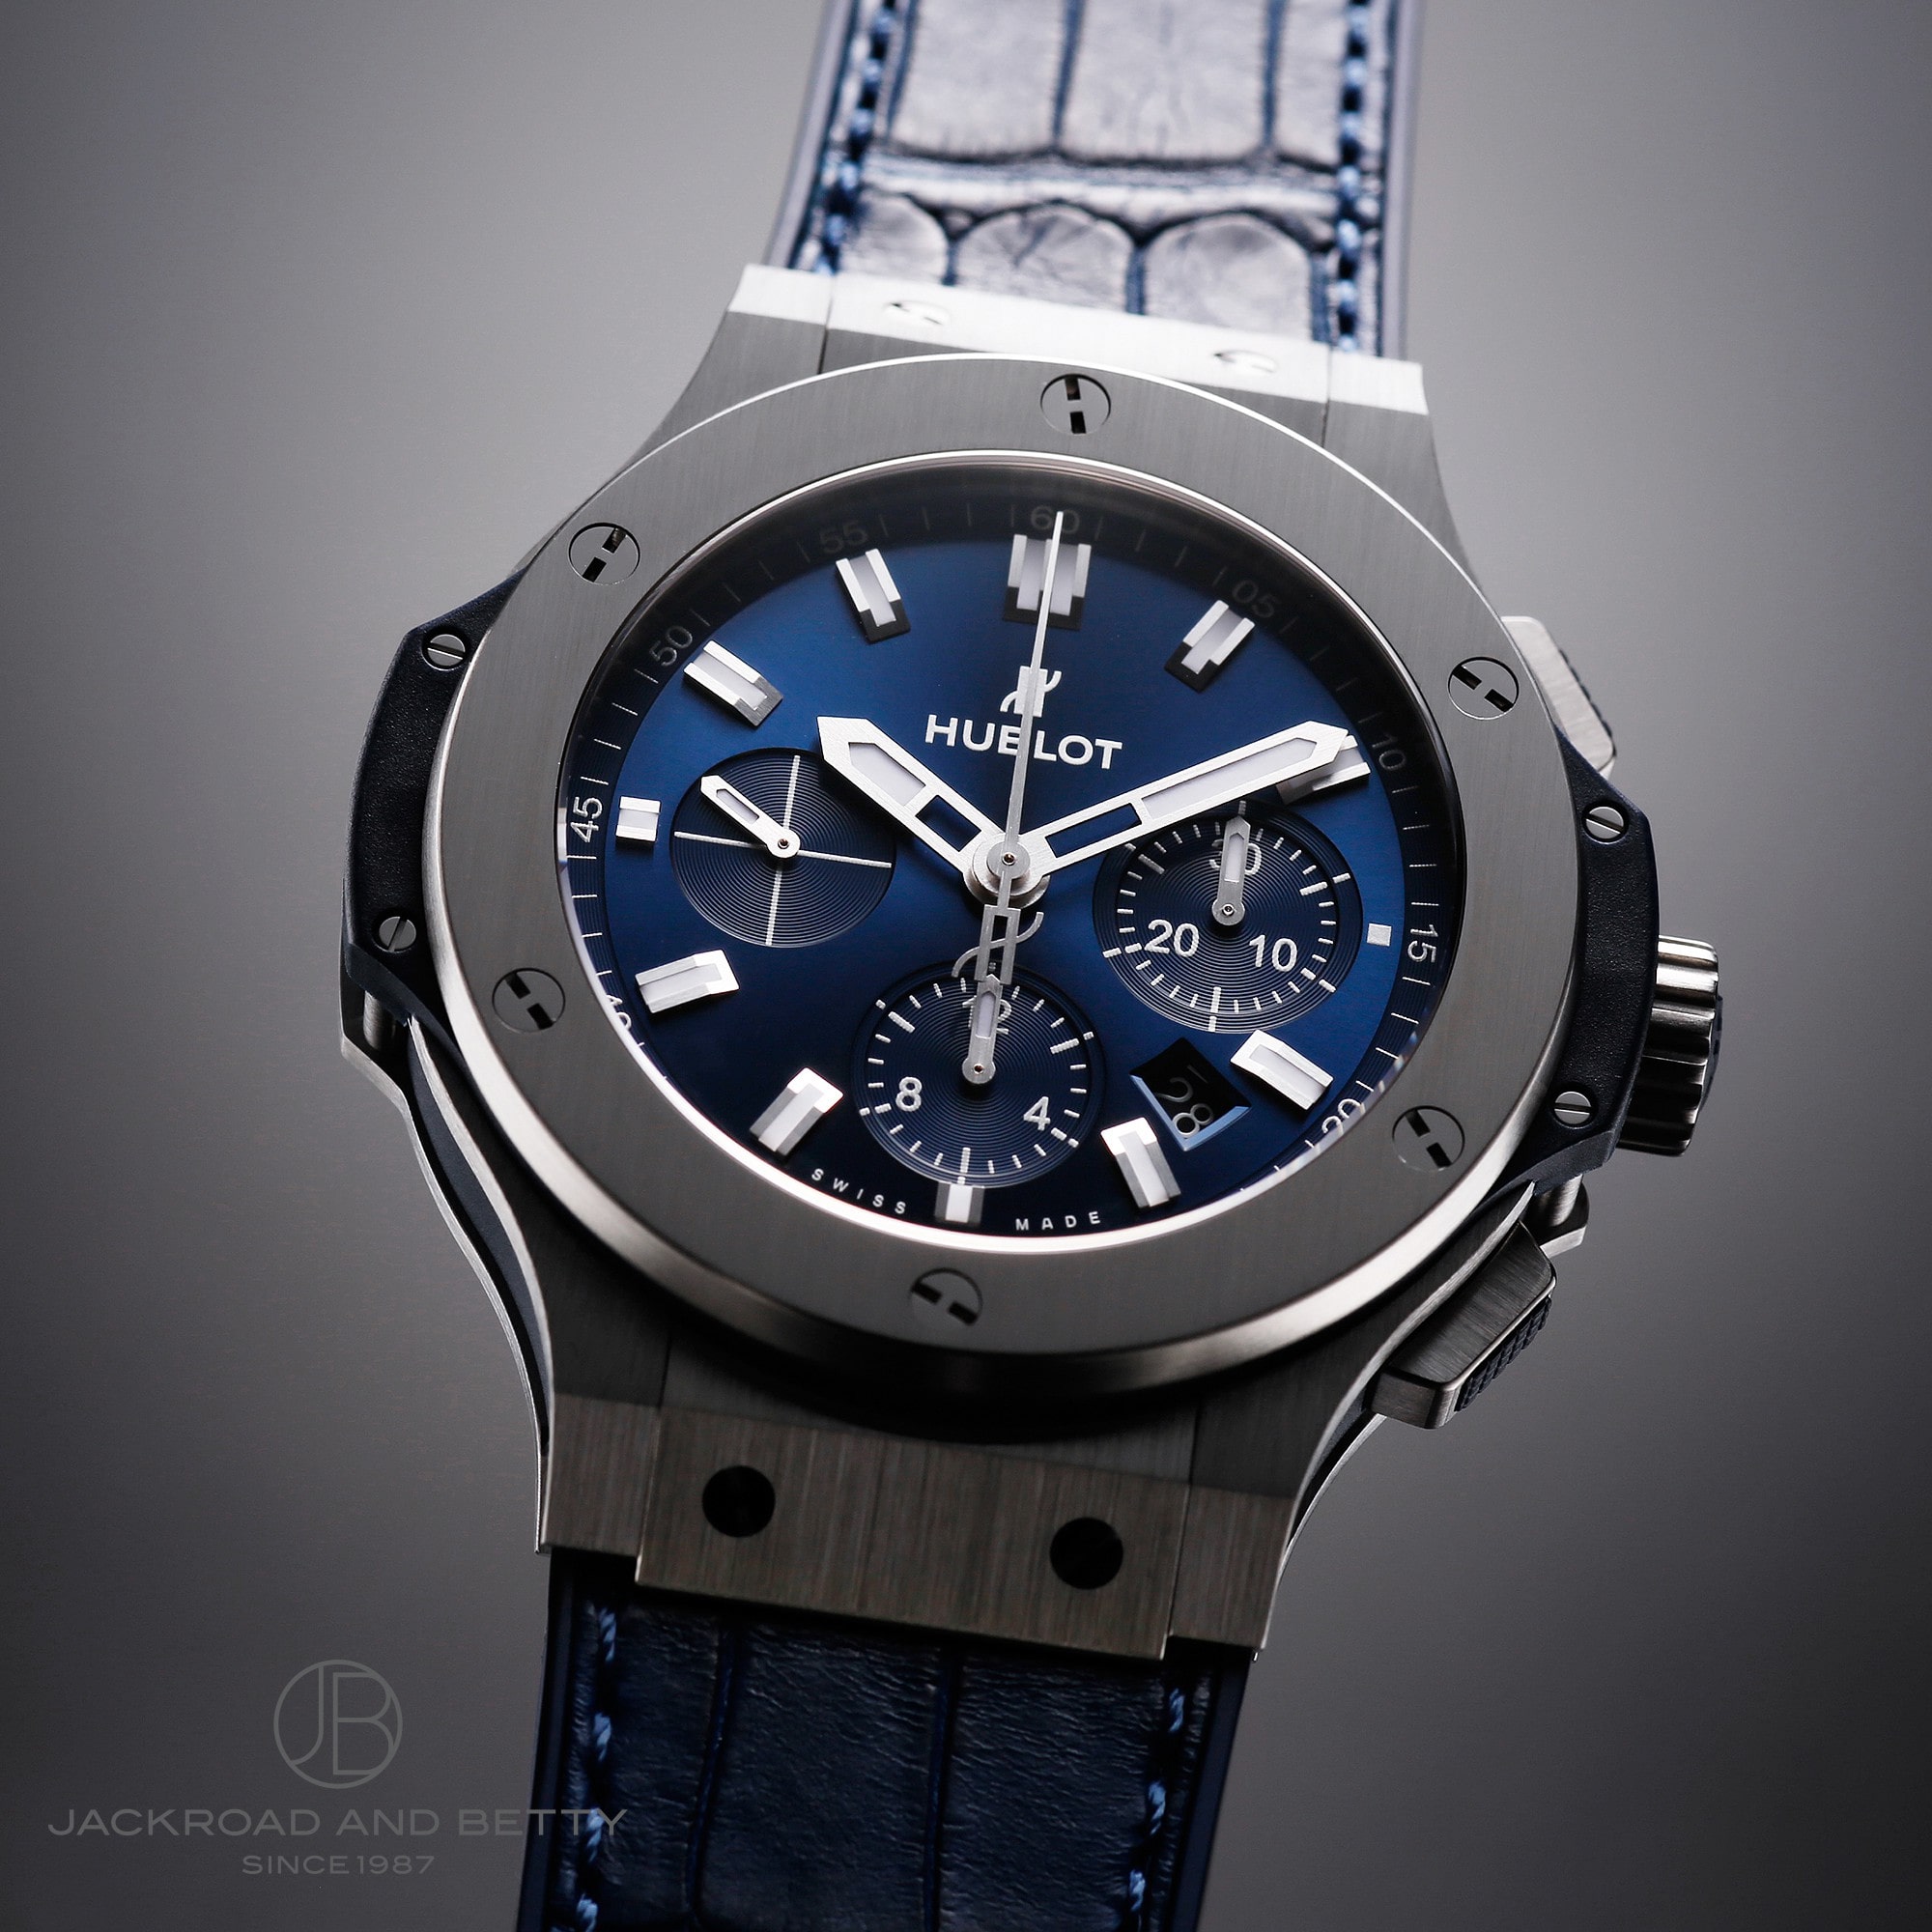 ウブロ HUBLOT ビッグ・バン スチール ブルー ダイヤモンド 301.SX.7170.LR.1104 ブルー ステンレススチール 自動巻き メンズ 腕時計